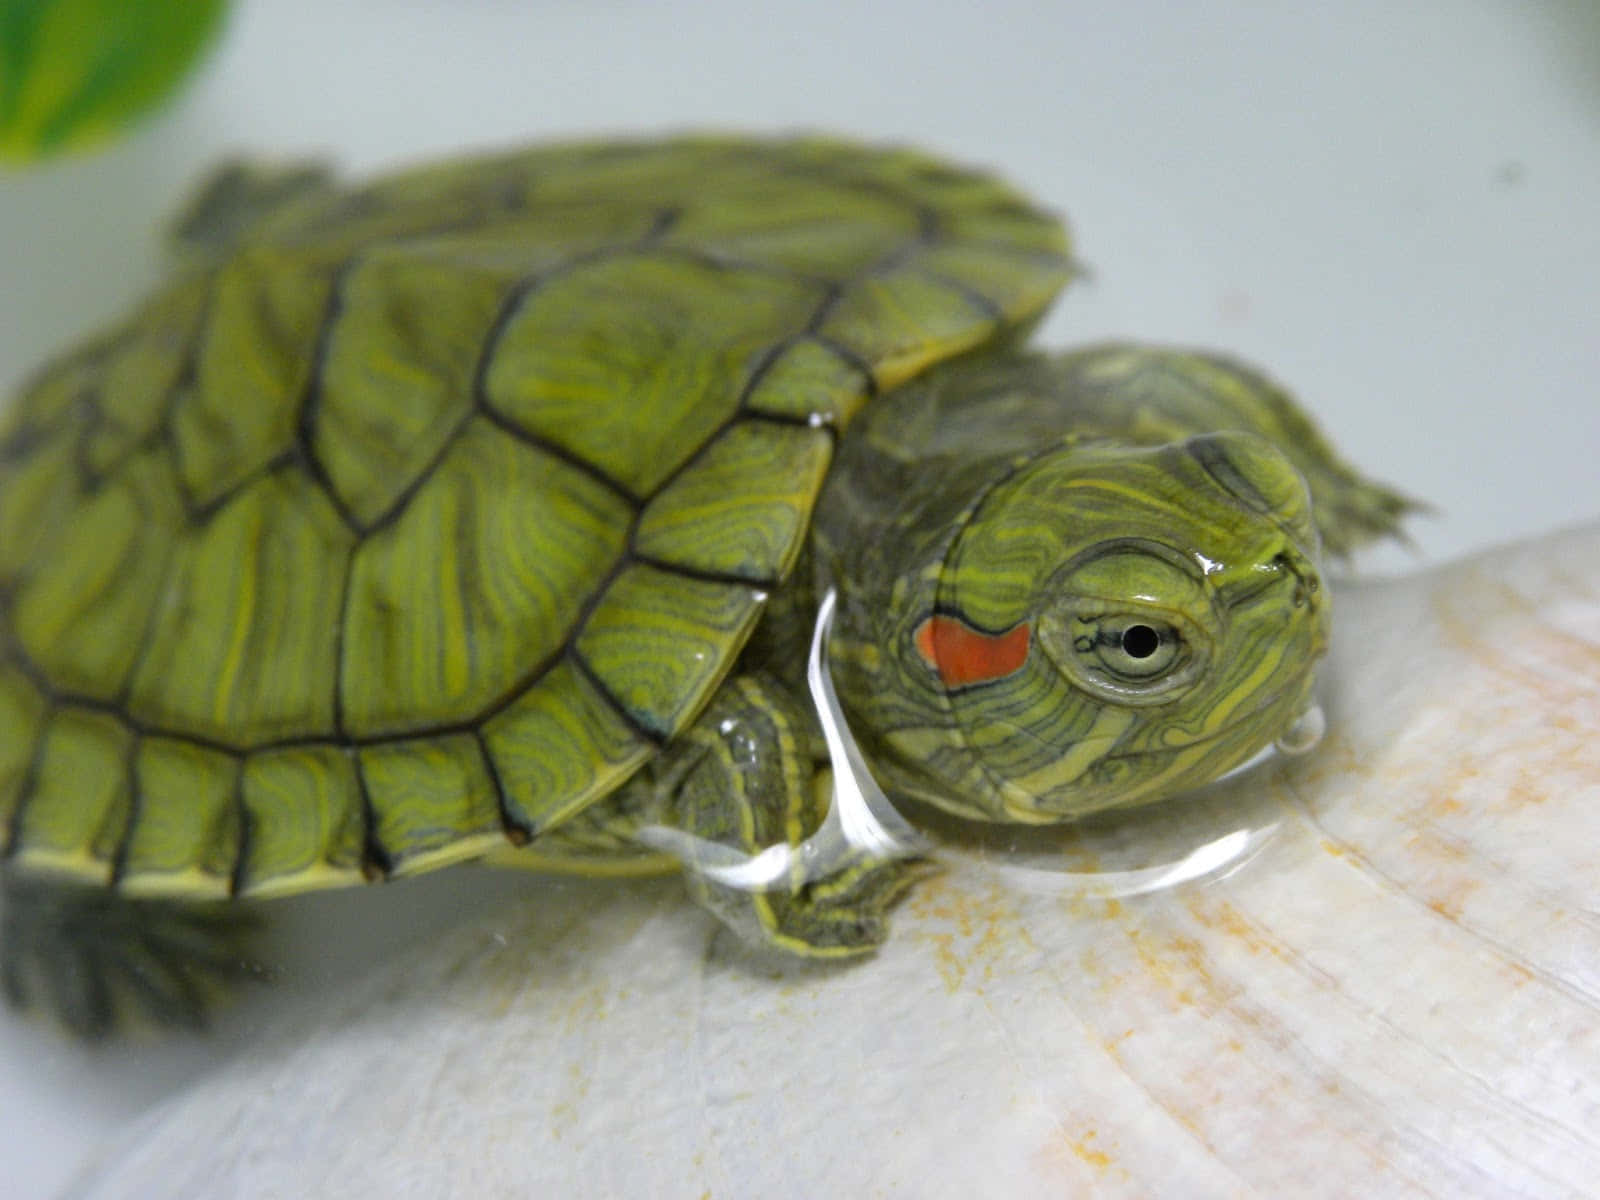 Schaudir Diese Süße Schildkröte An!